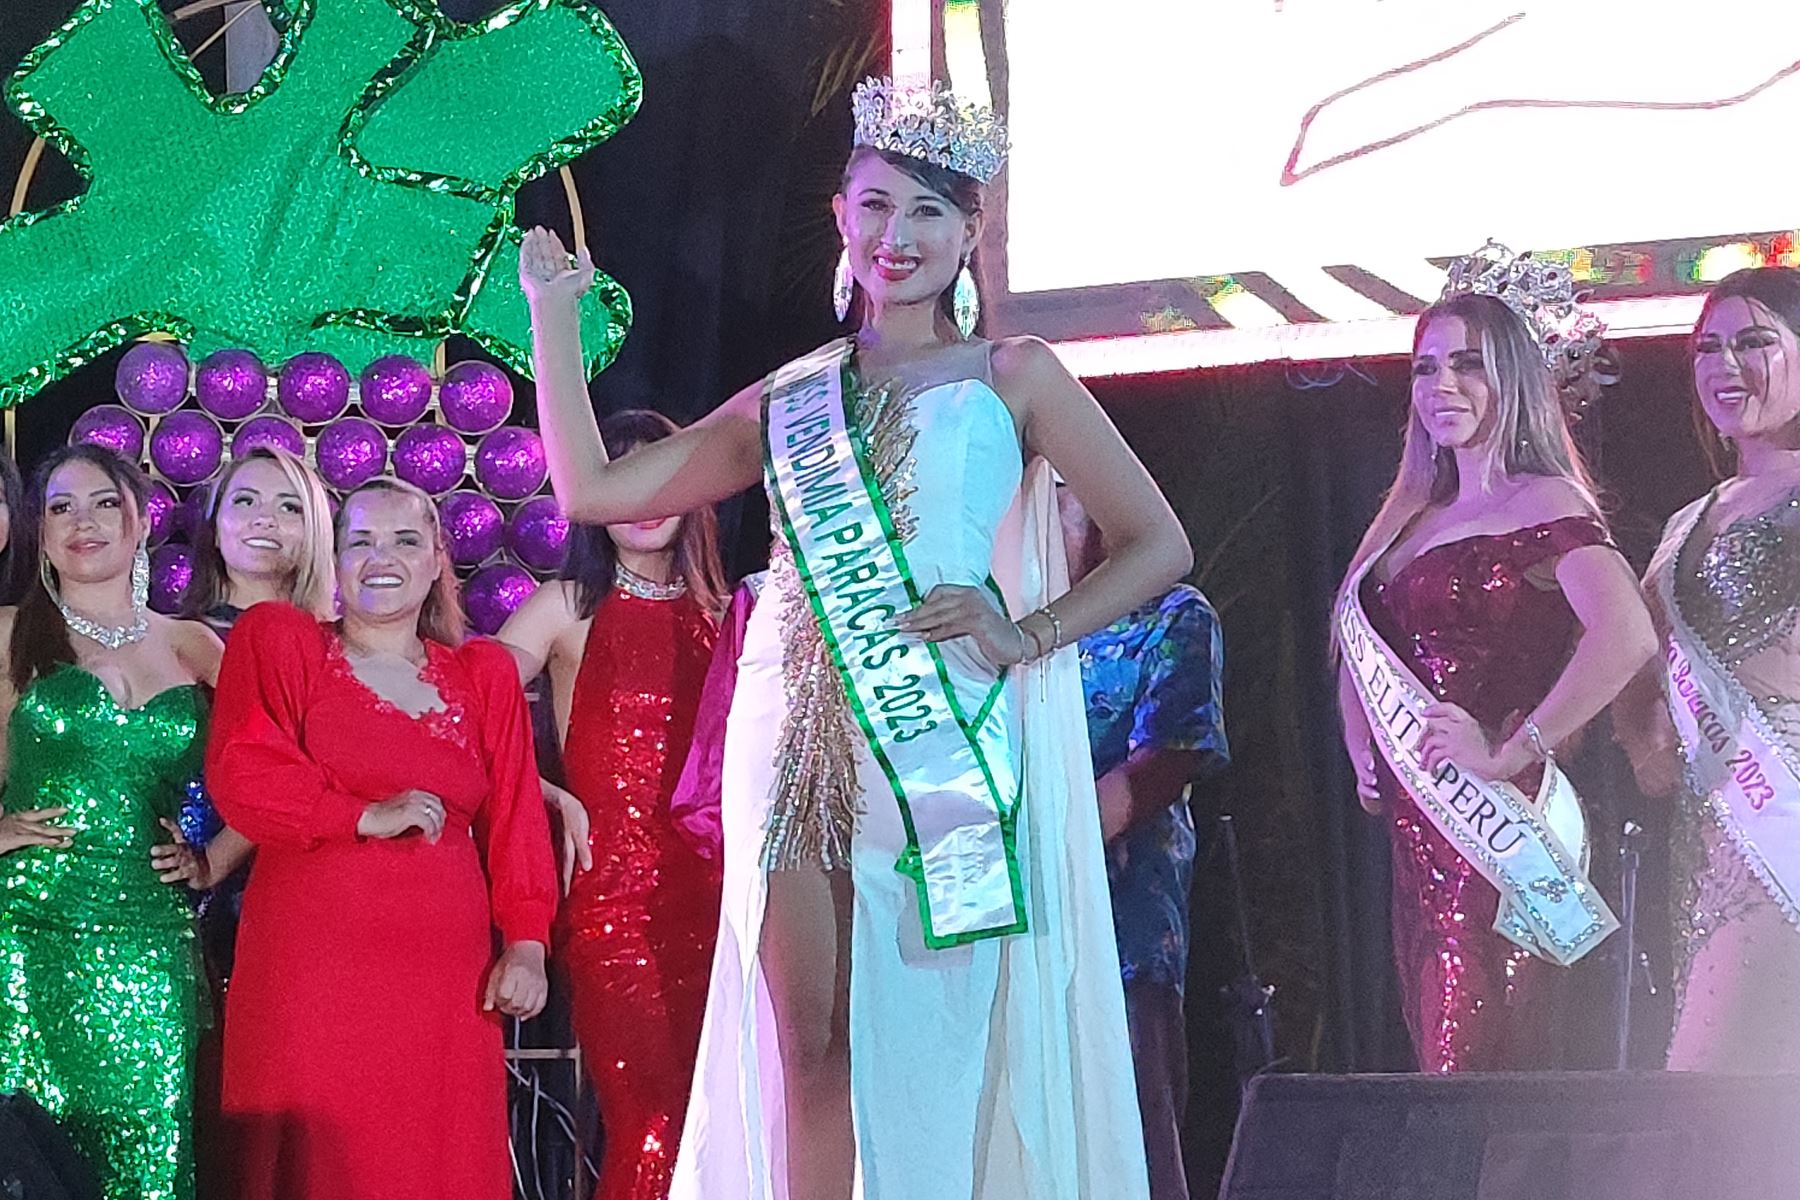 Bárbara Cam fue coronada como la Miss Vendimia Paracas 2023, en el marco de las celebraciones del V Festival de la Vendimia.
Foto: ANDINA/Daniel Bracamonte